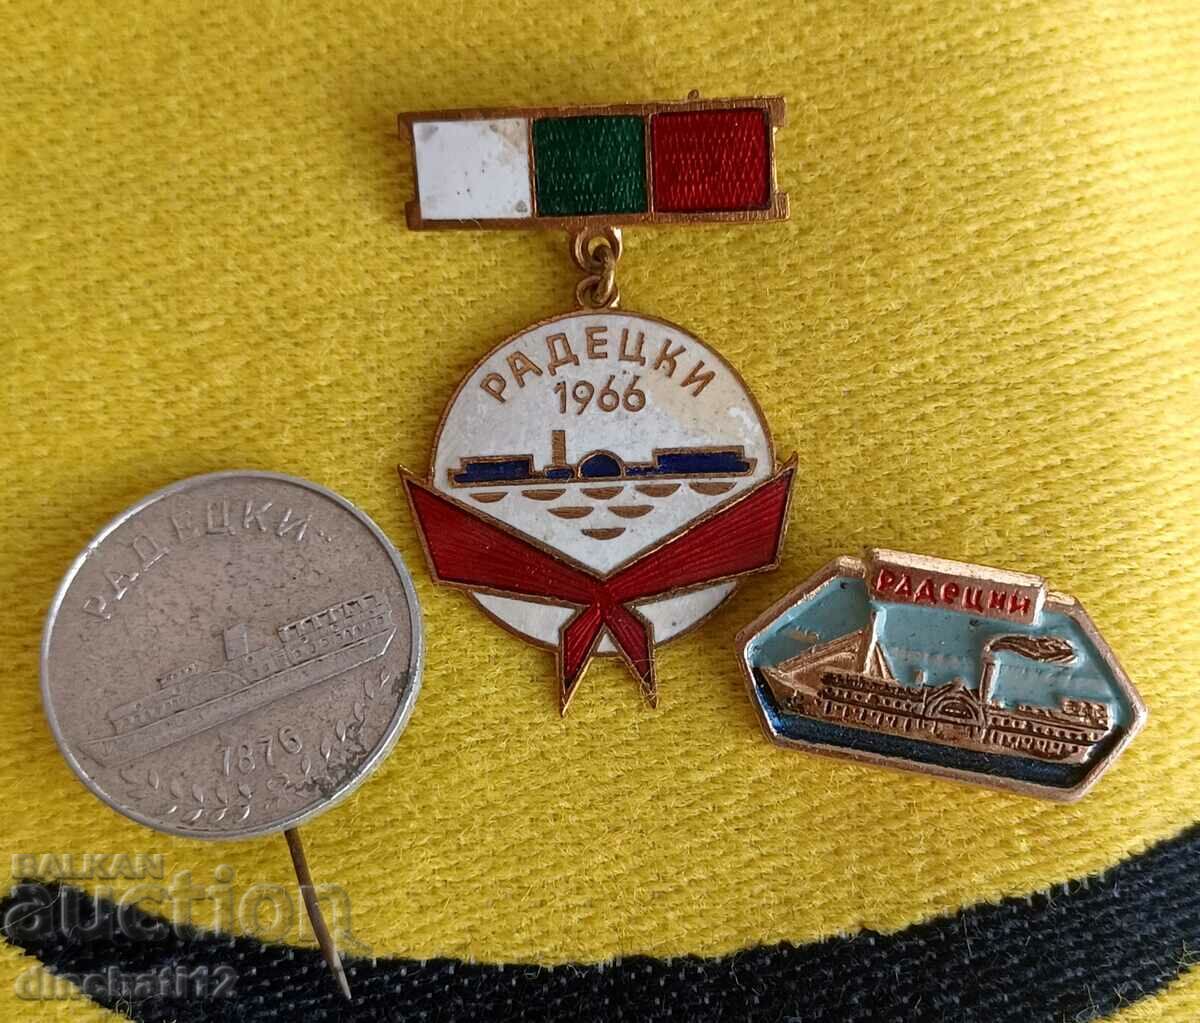 Lot of 3 Ship badges. Steamer Radetsky